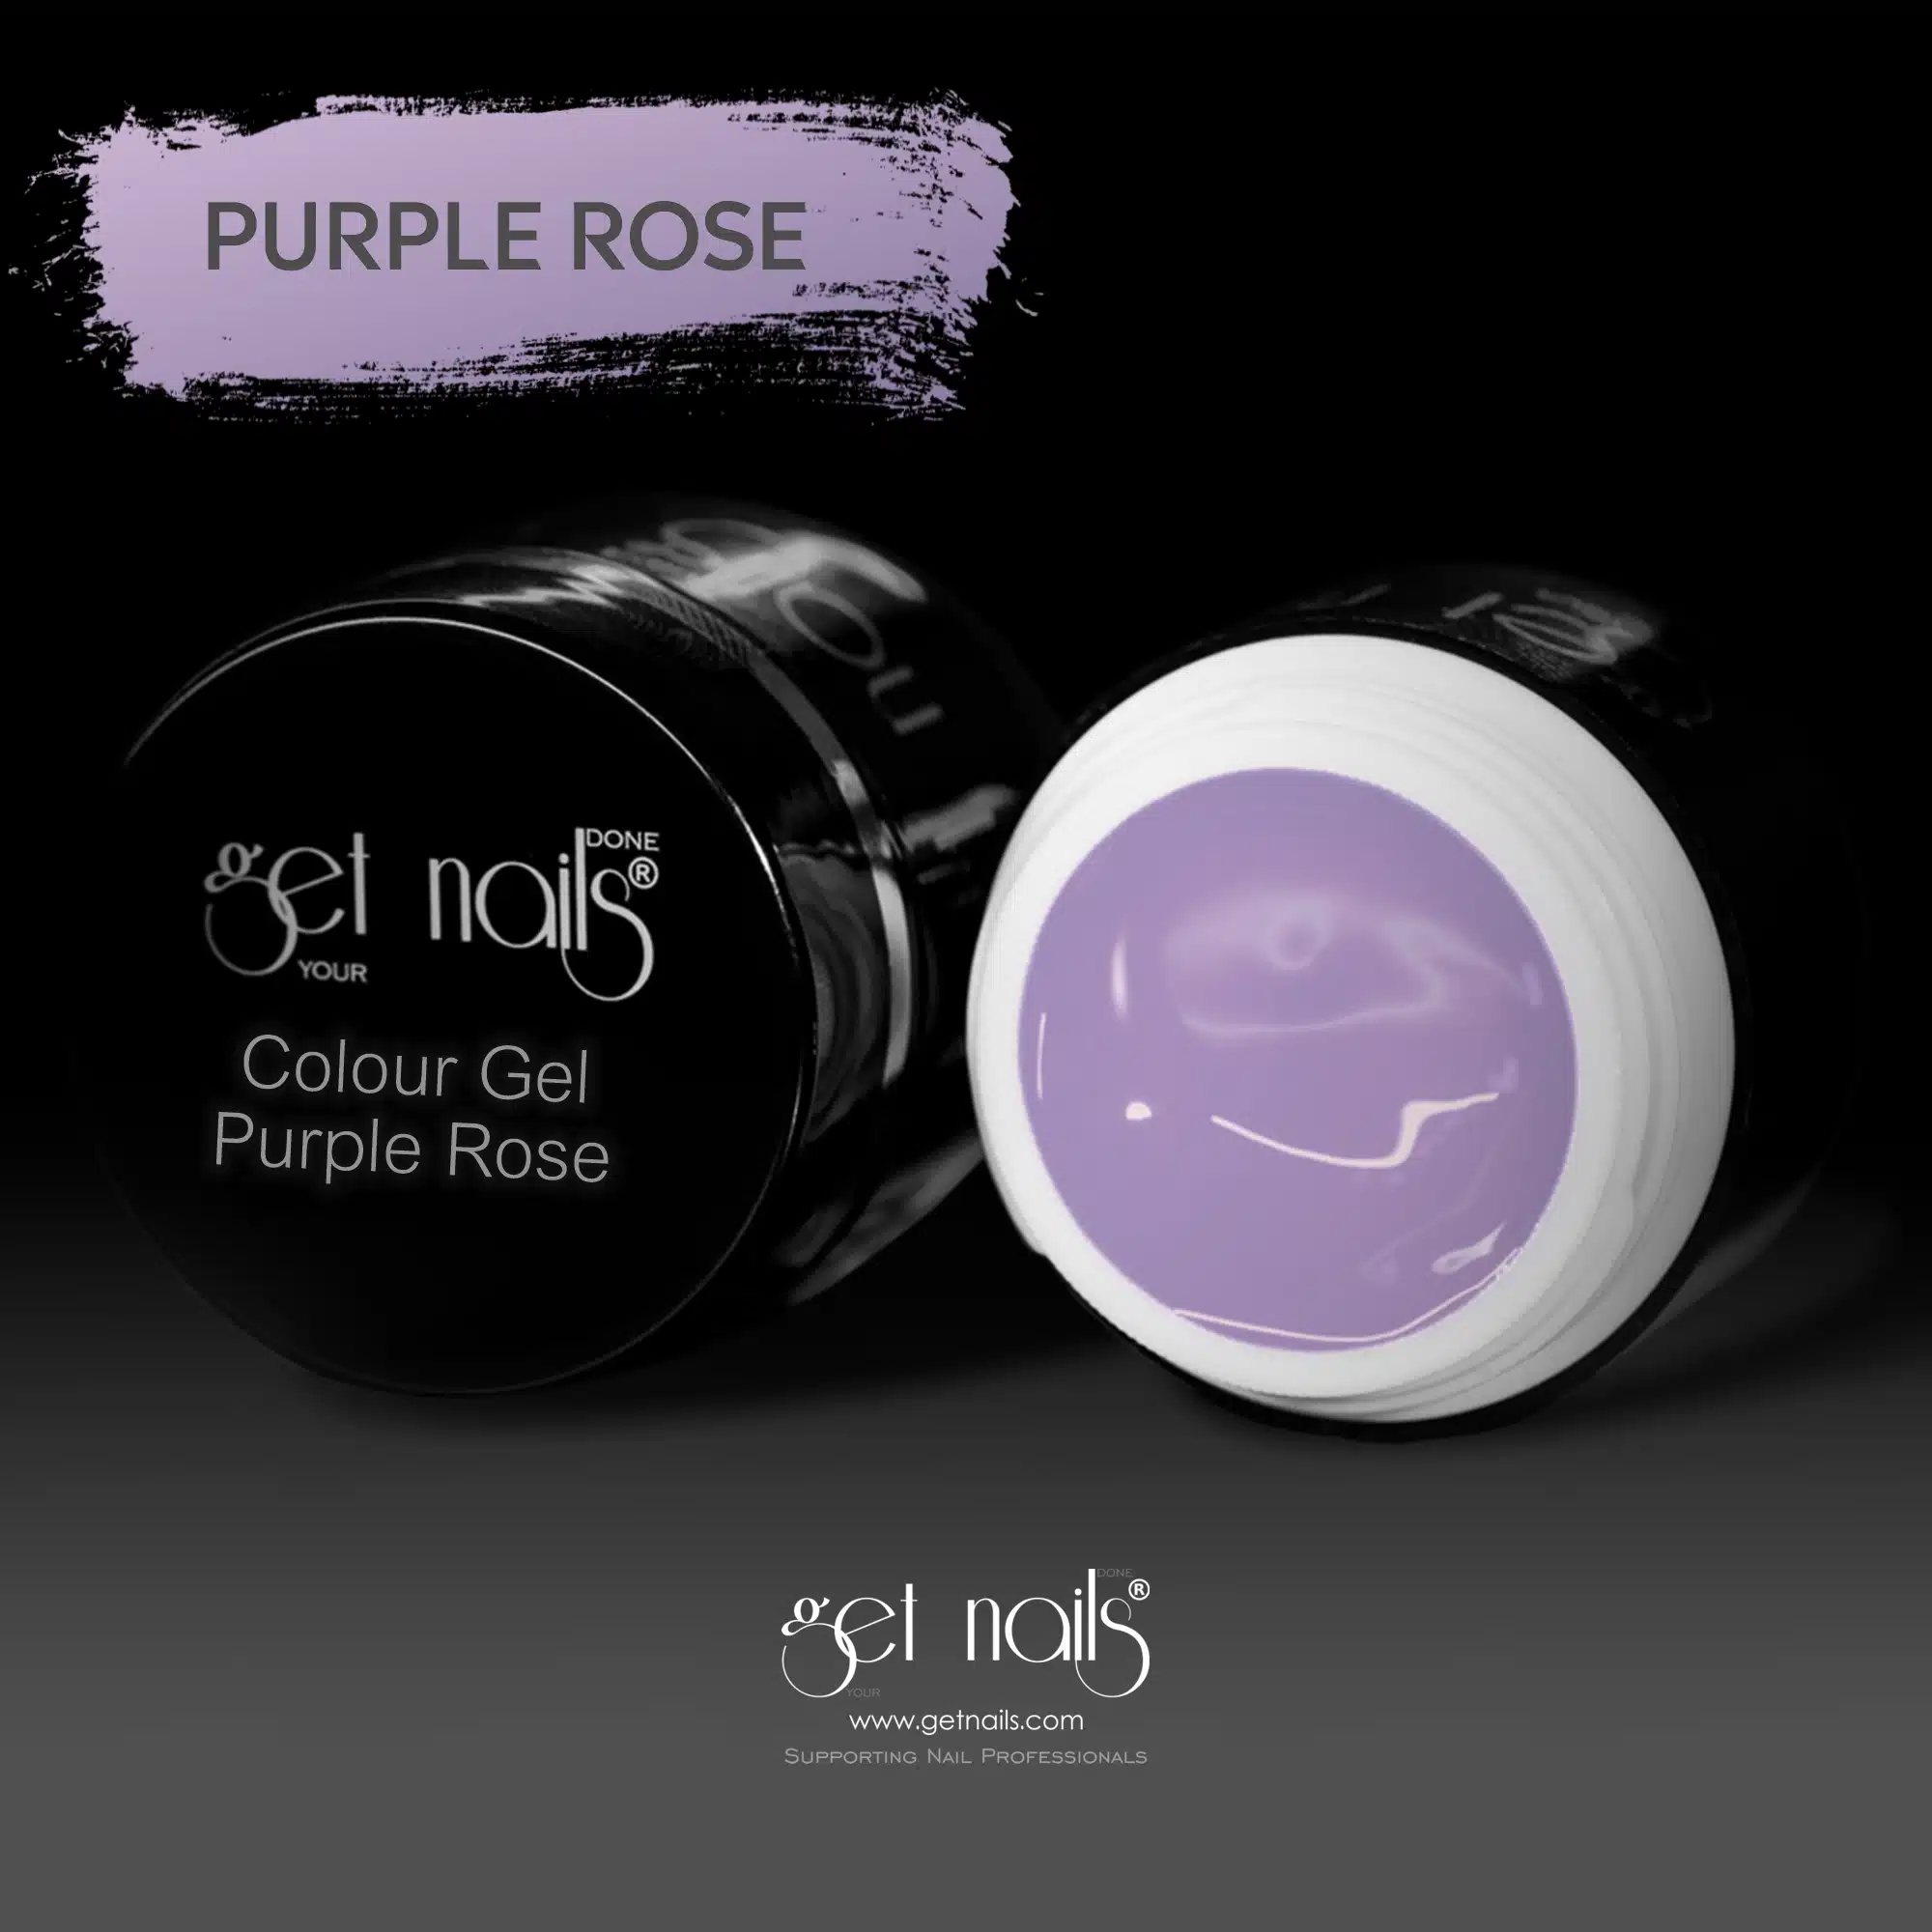 Get Nails Austria - Цветной гель Purple Rose 5g